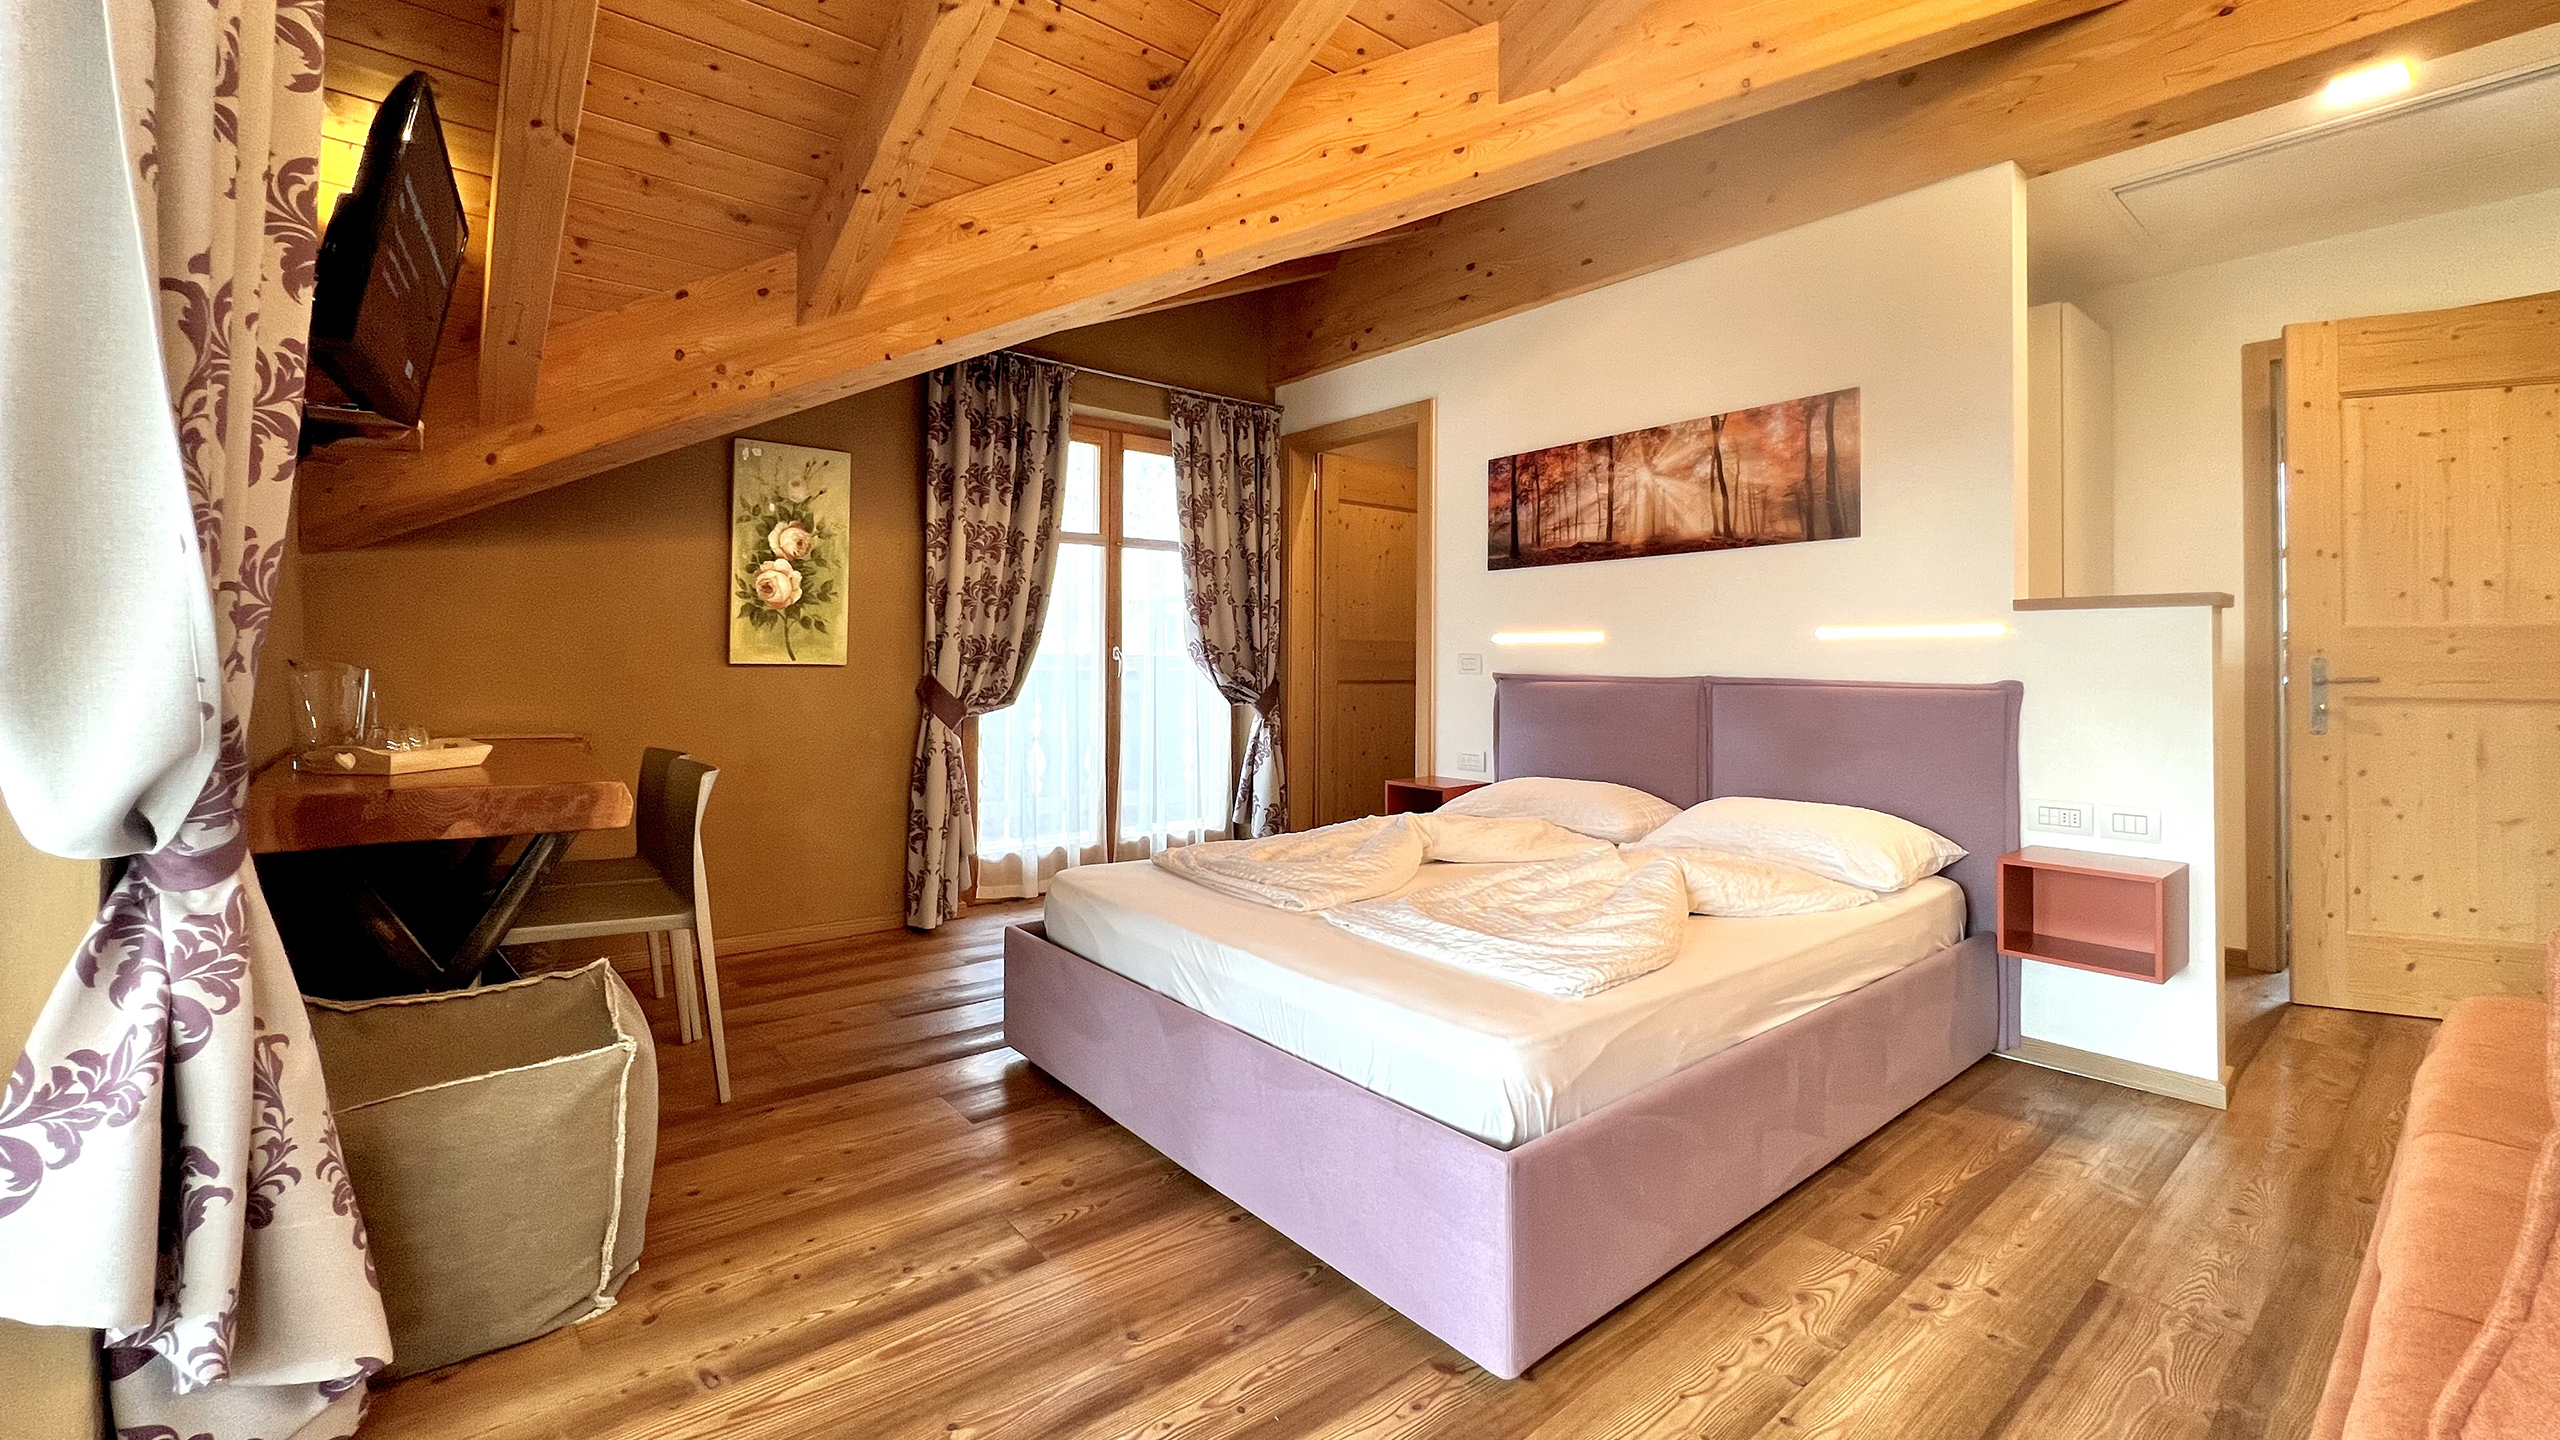 Crosina Holiday – Ferienwohnungen in der Nähe des Ledrosees im Trentino für einen Paar- oder Familienurlaub Willkommen in der  B&B Fattoria della Patty